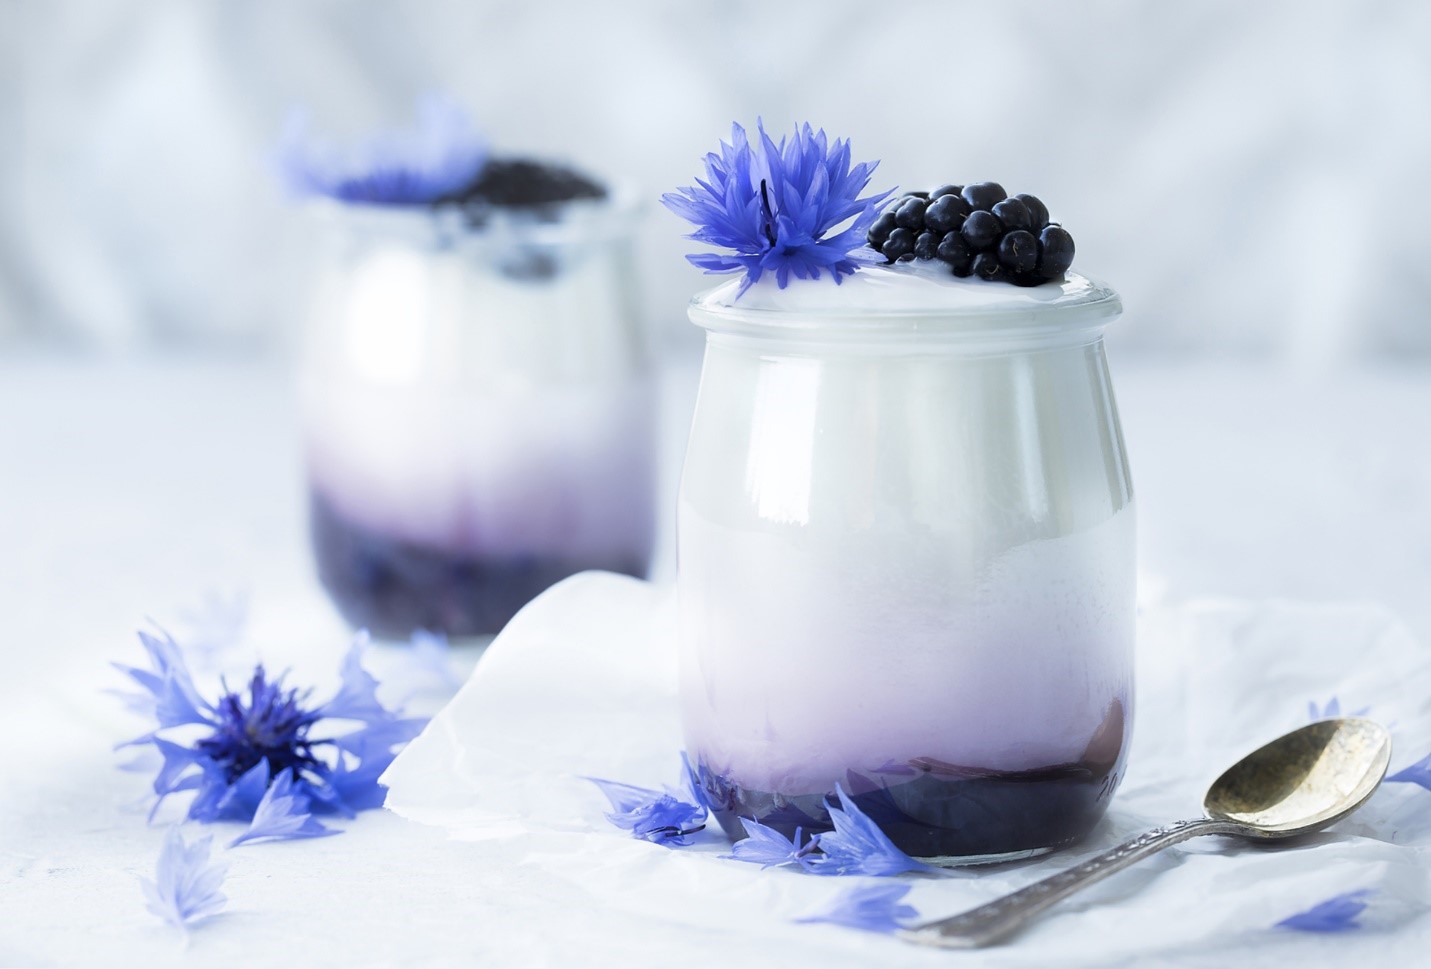 yogurt in glass jar with berry